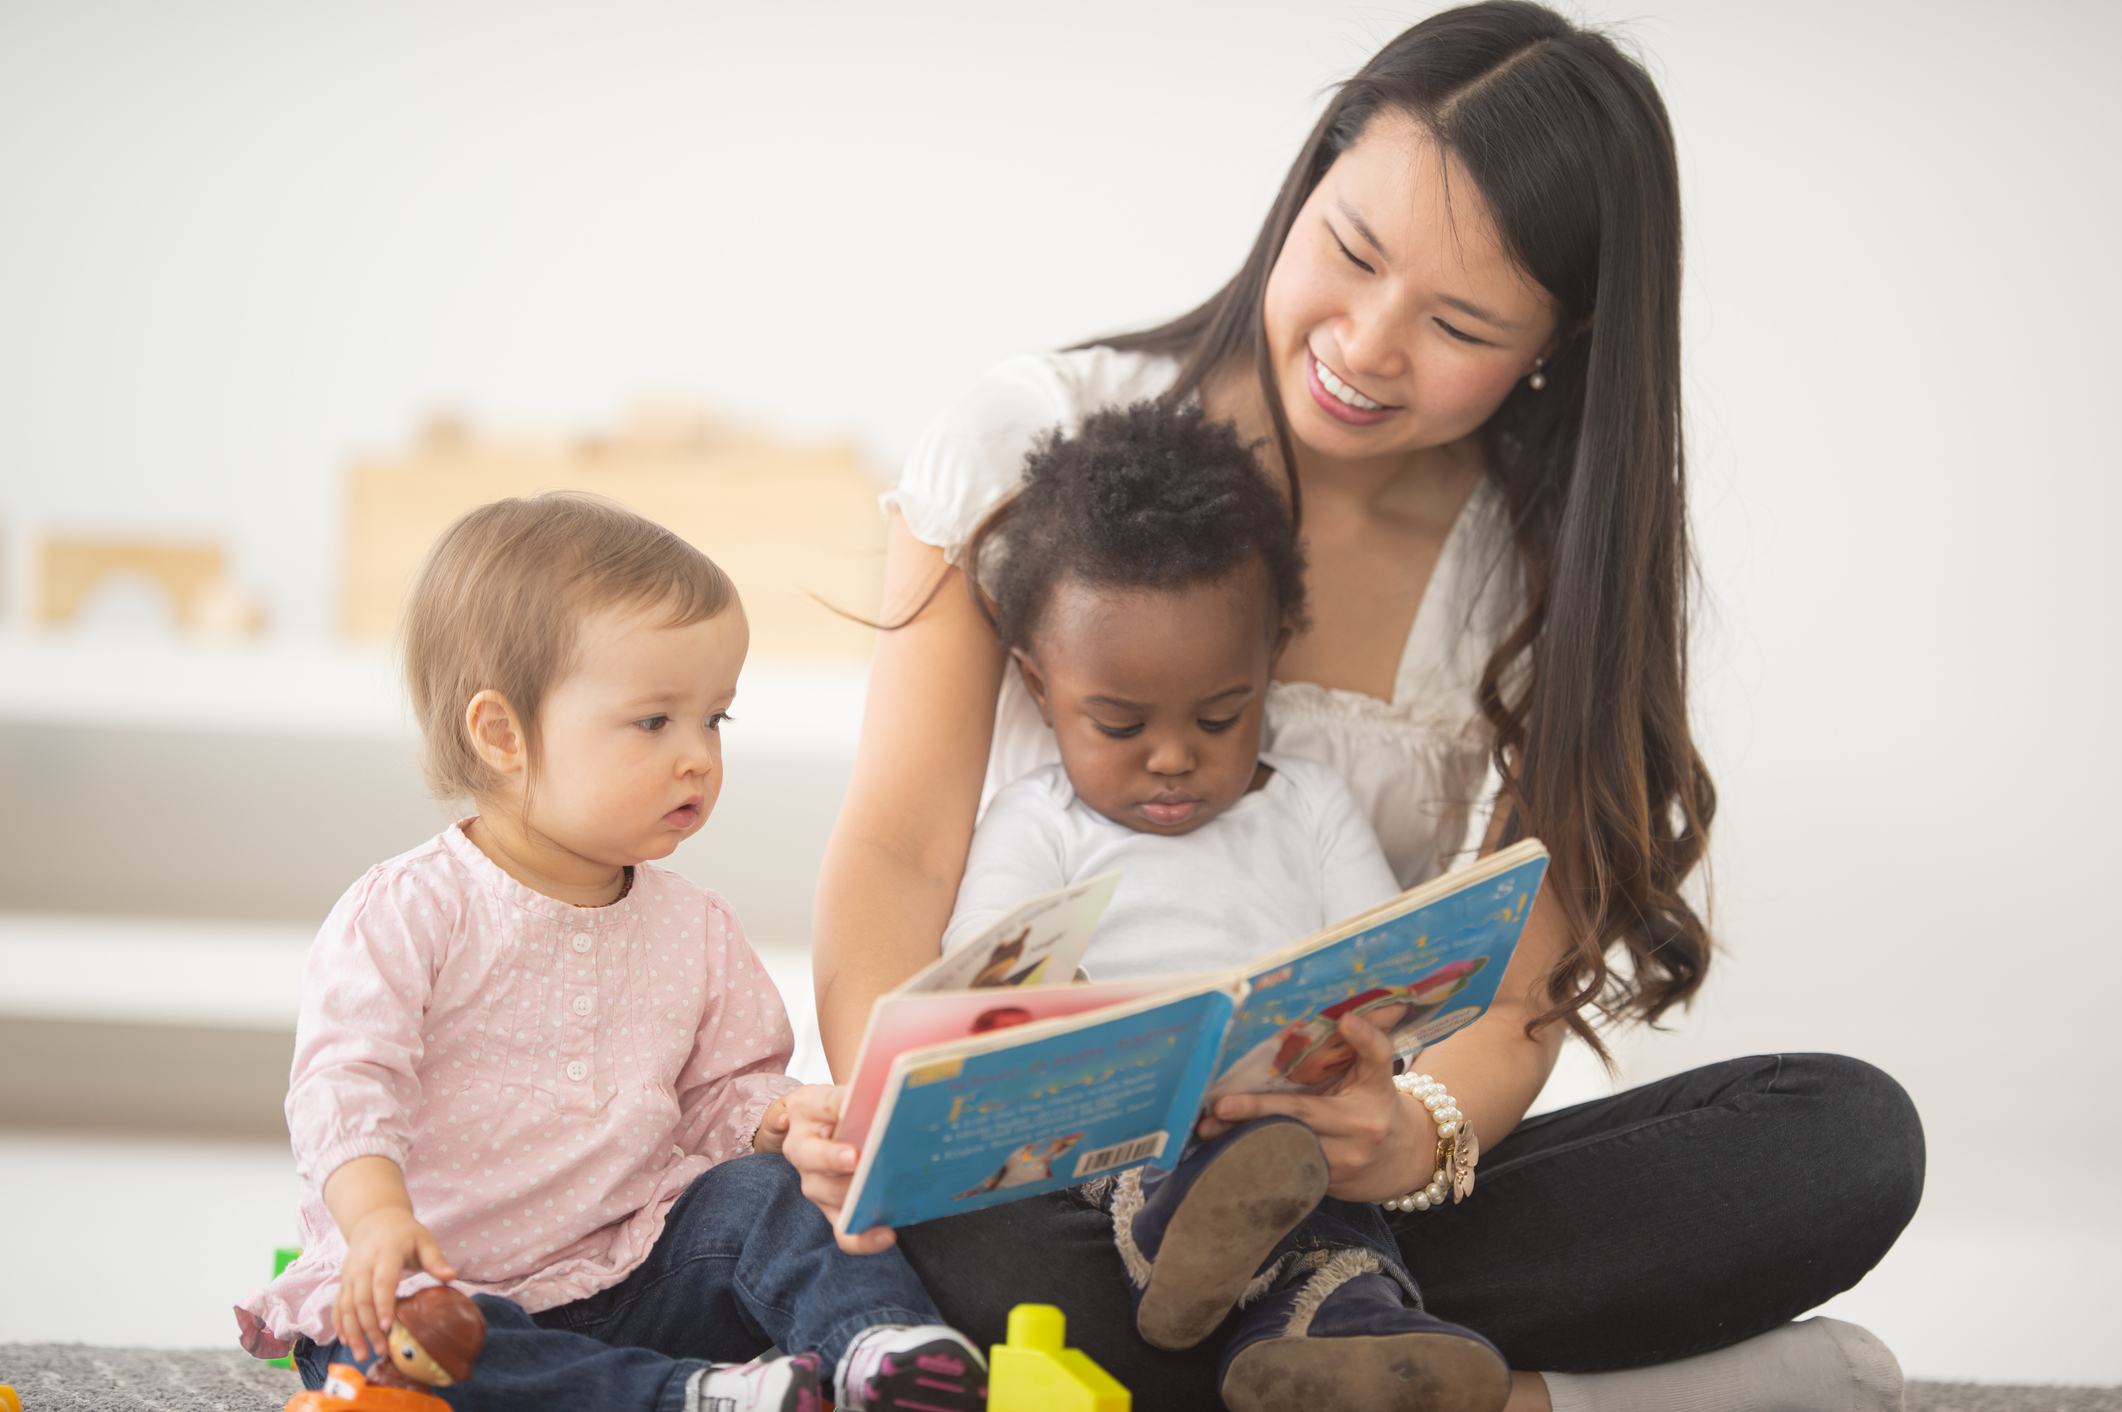 À la recherche d’une baby-sitter : les meilleures plateformes pour faire garder vos enfants